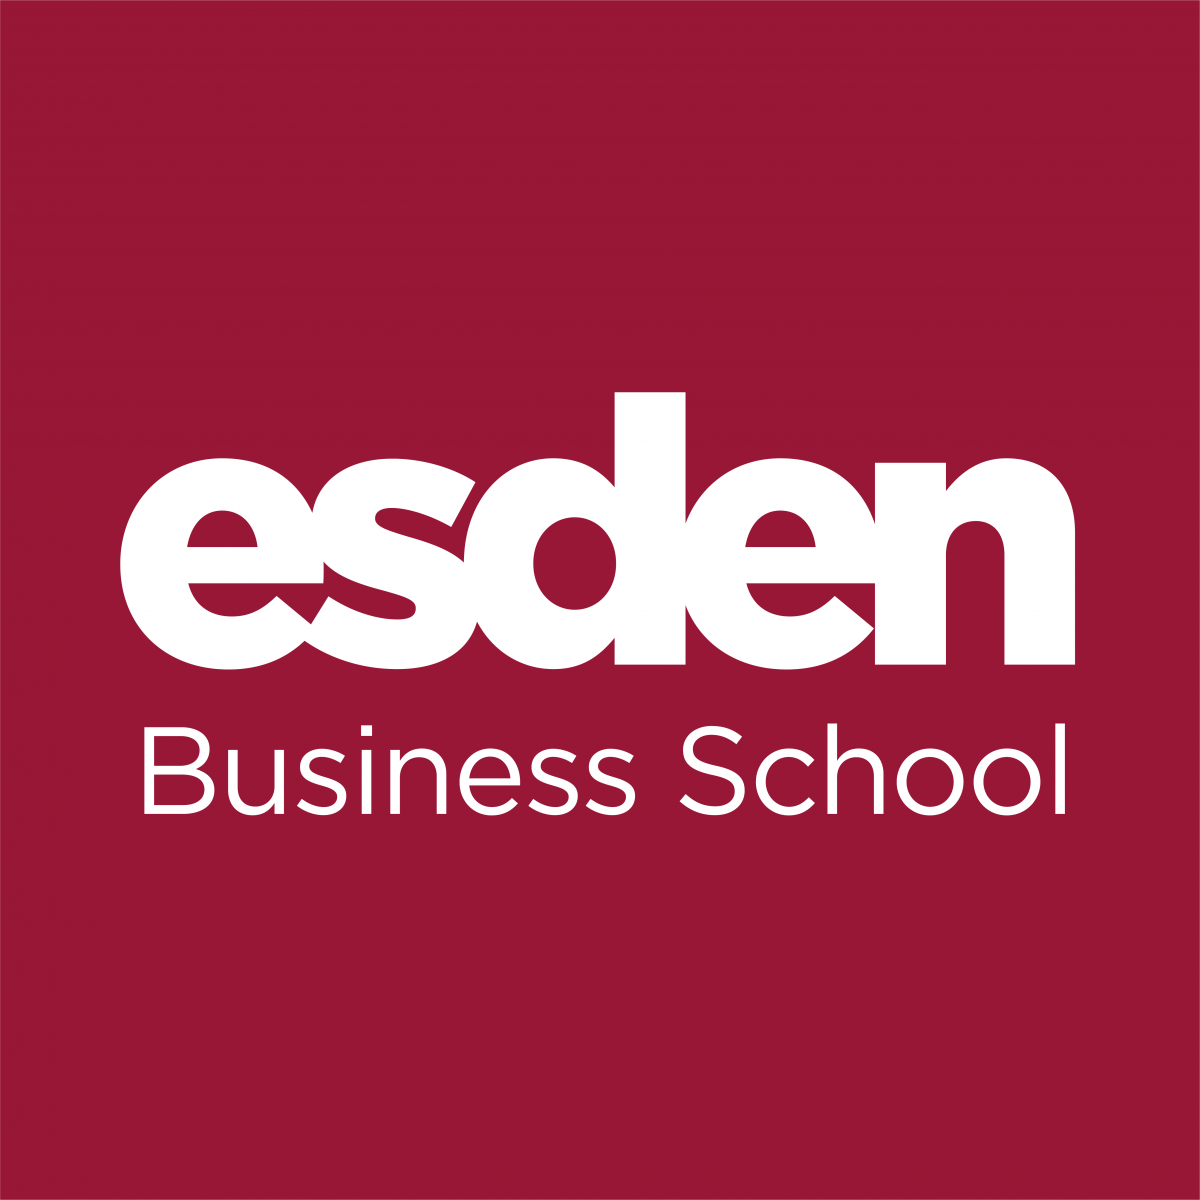 Esden business school formacion nuevas tecnologias negocios eldigital